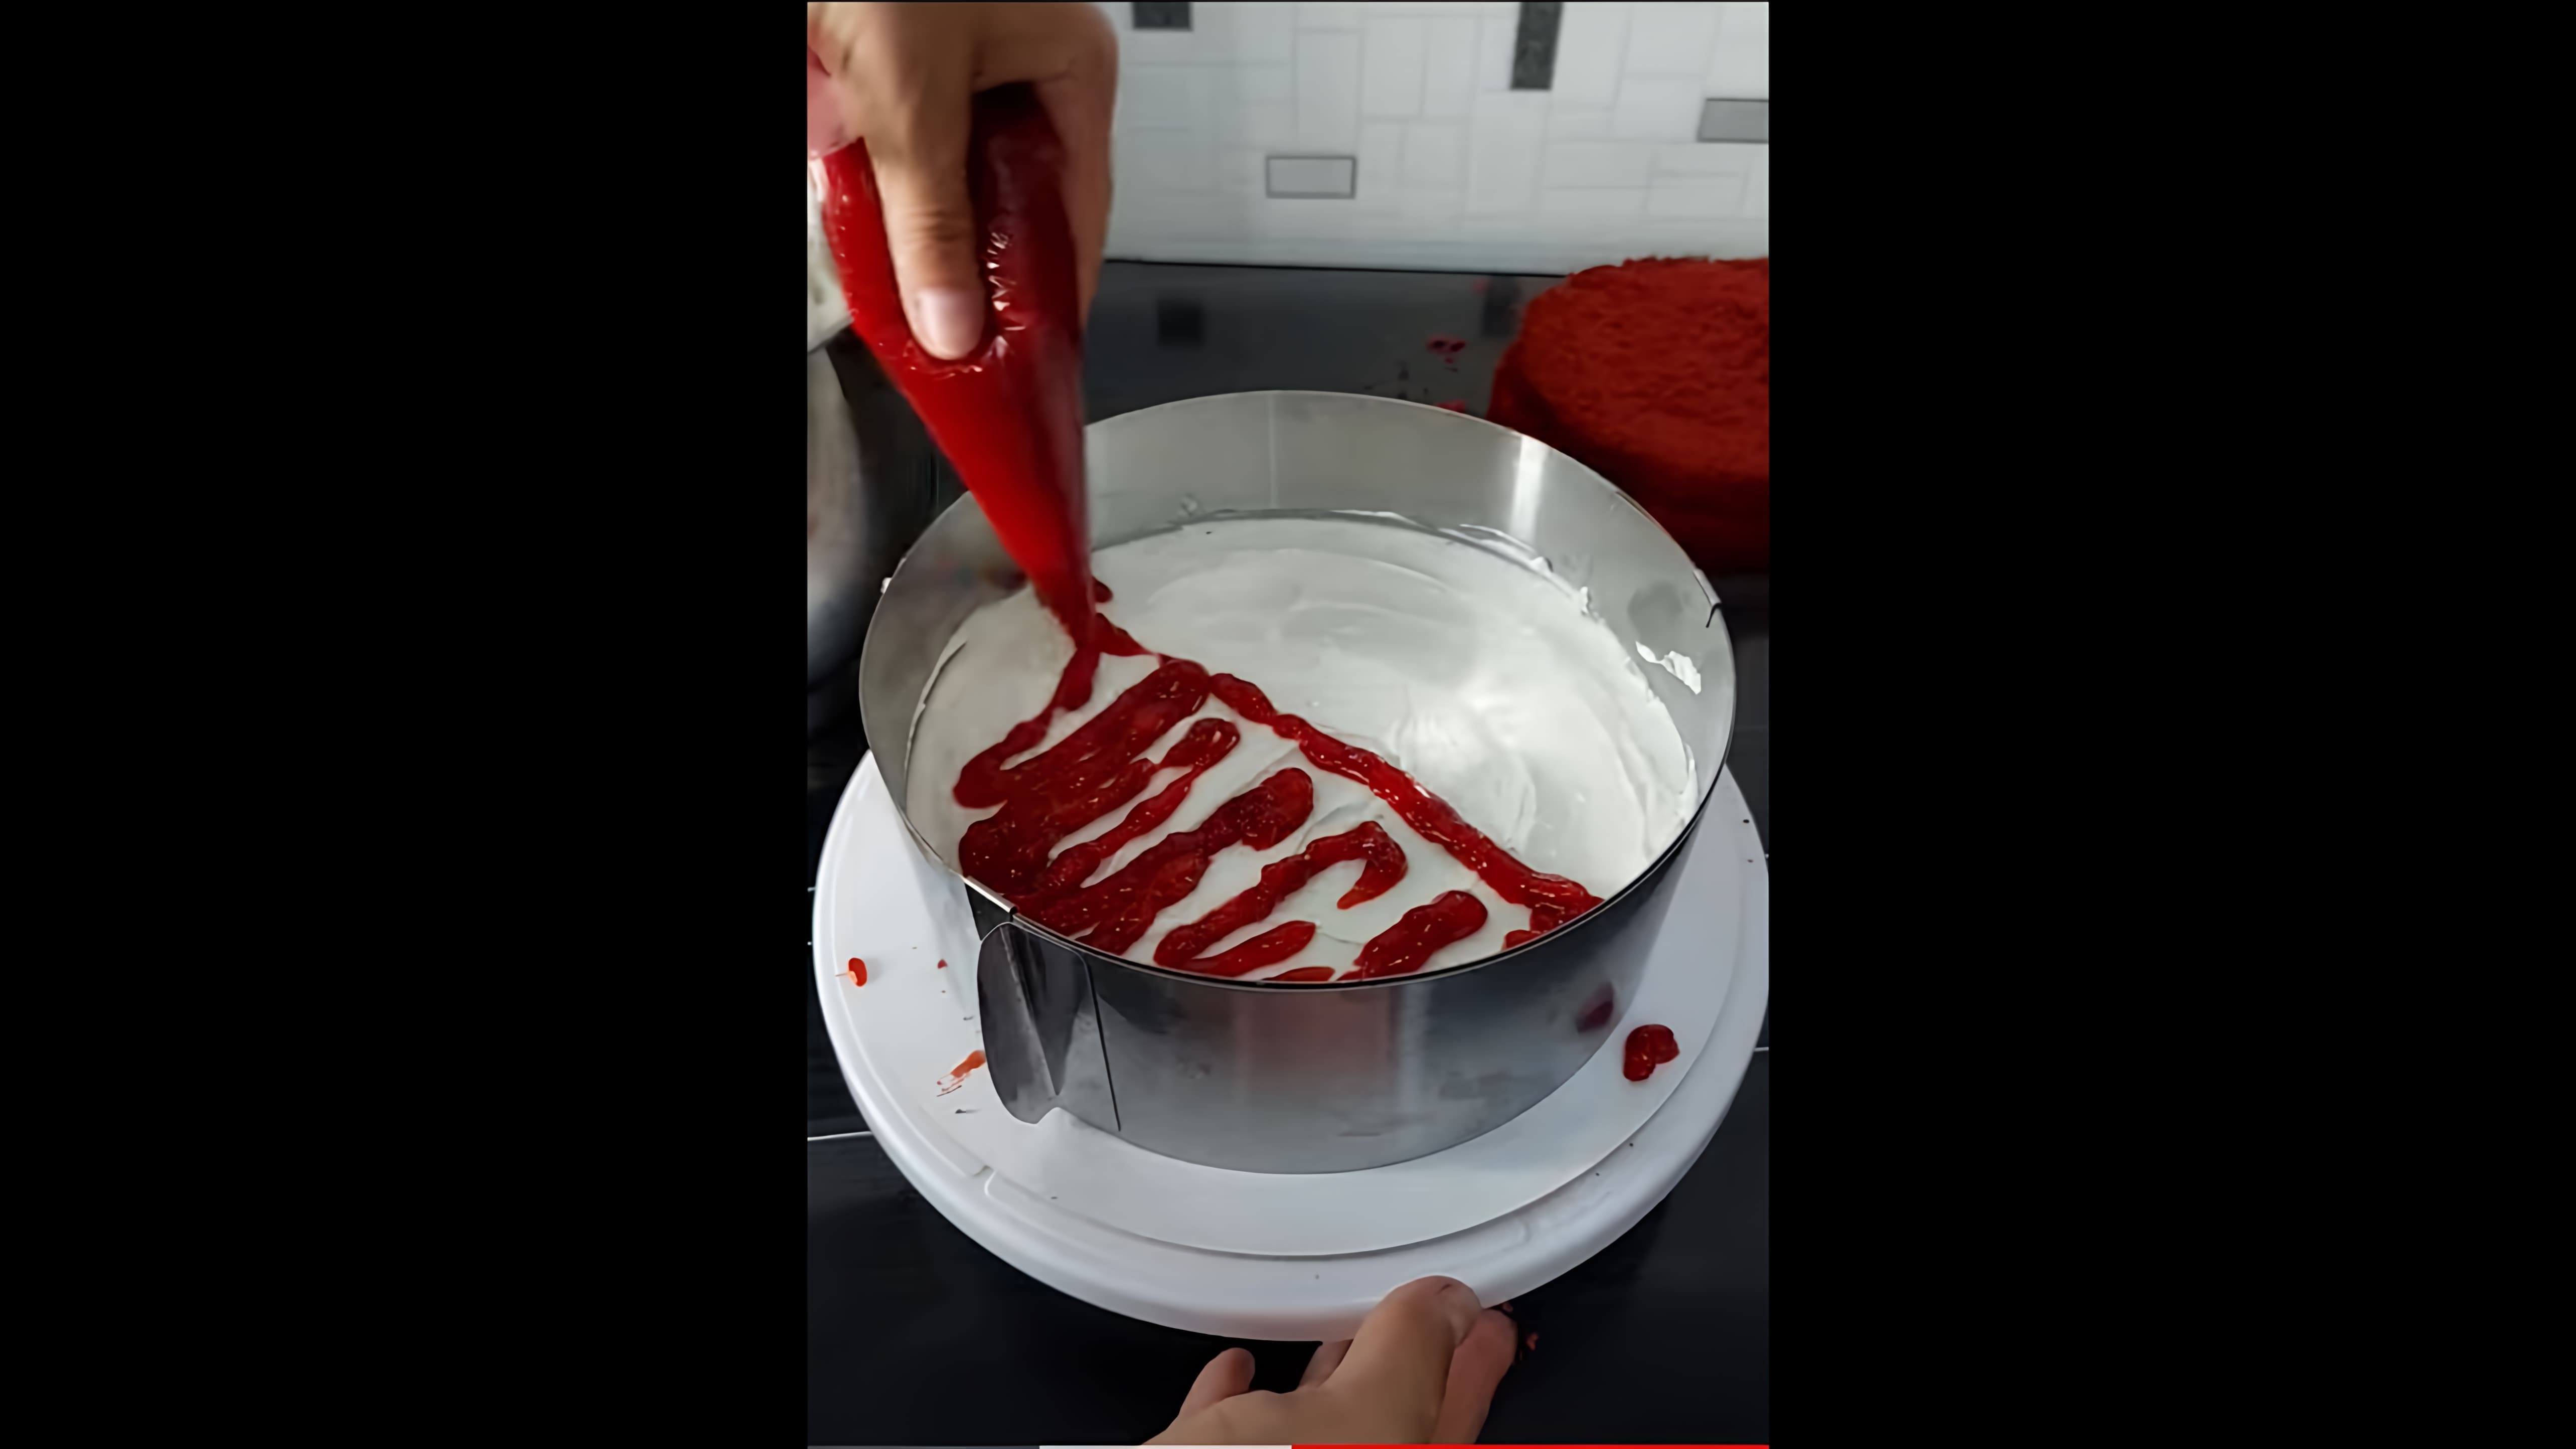 В этом видео демонстрируется процесс приготовления популярного торта "Красный бархат"